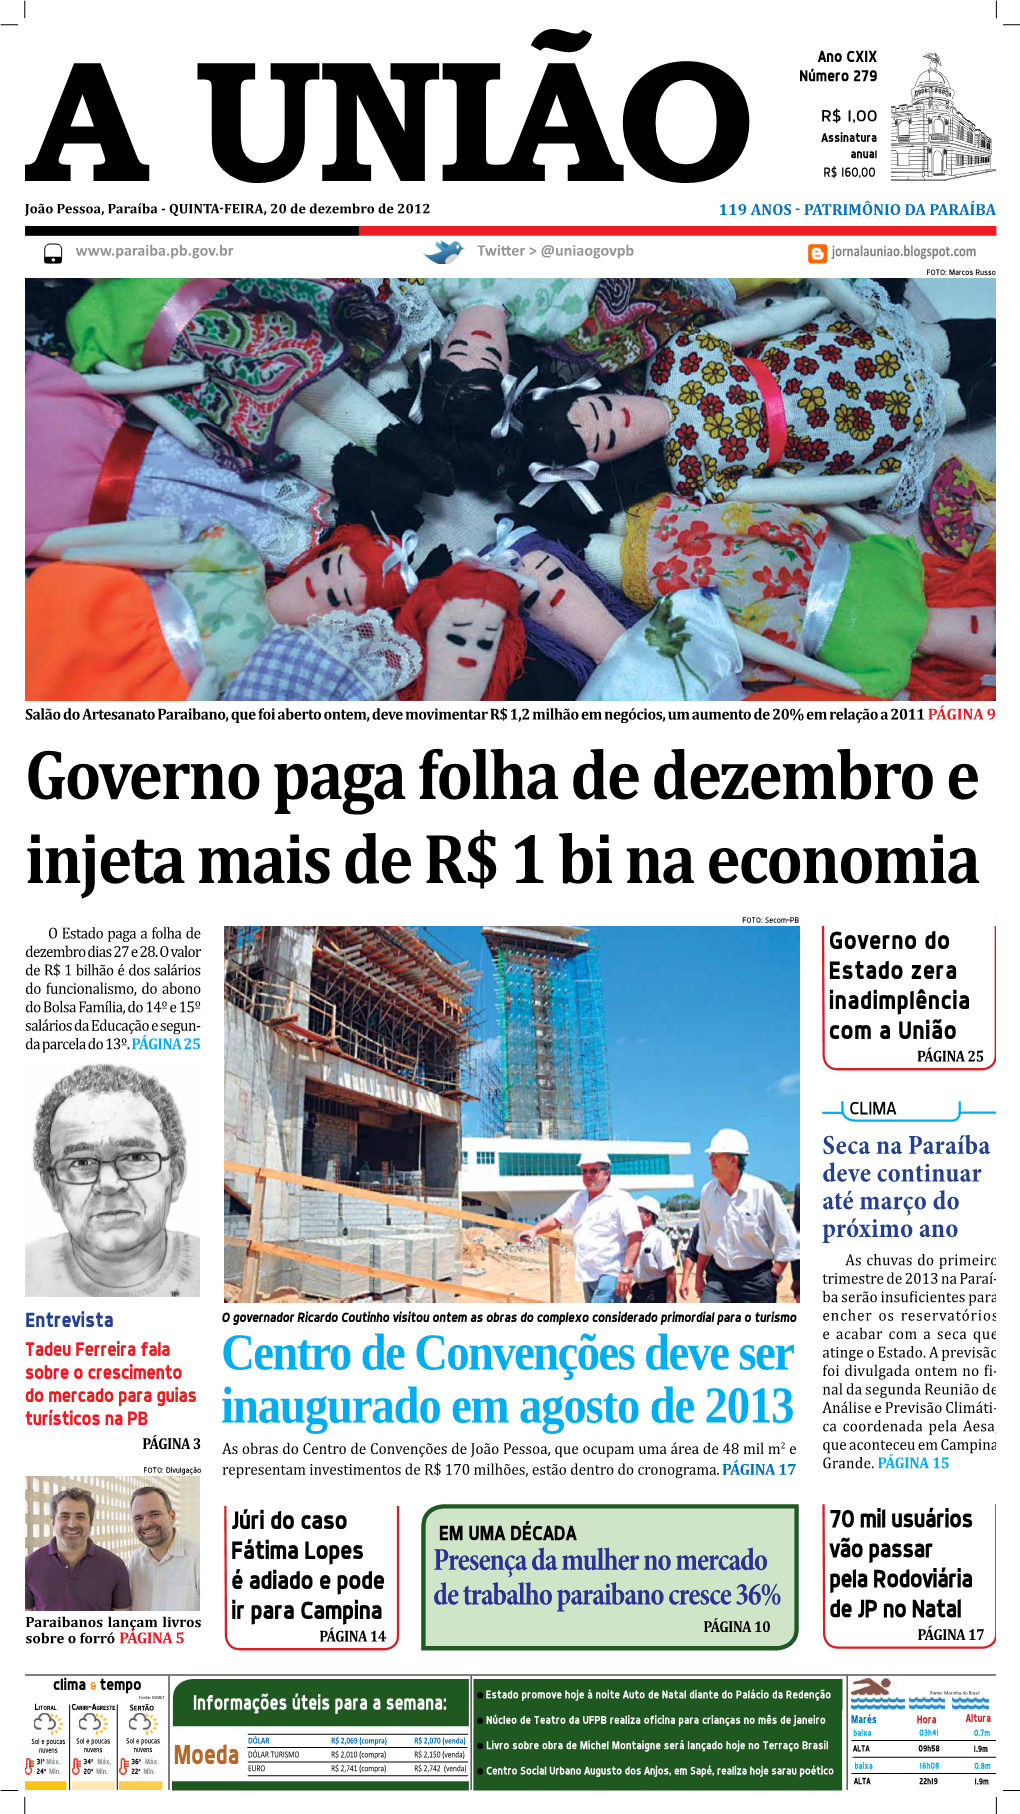 Governo Paga Folha De Dezembro E Injeta Mais De R$ 1 Bi Na Economia